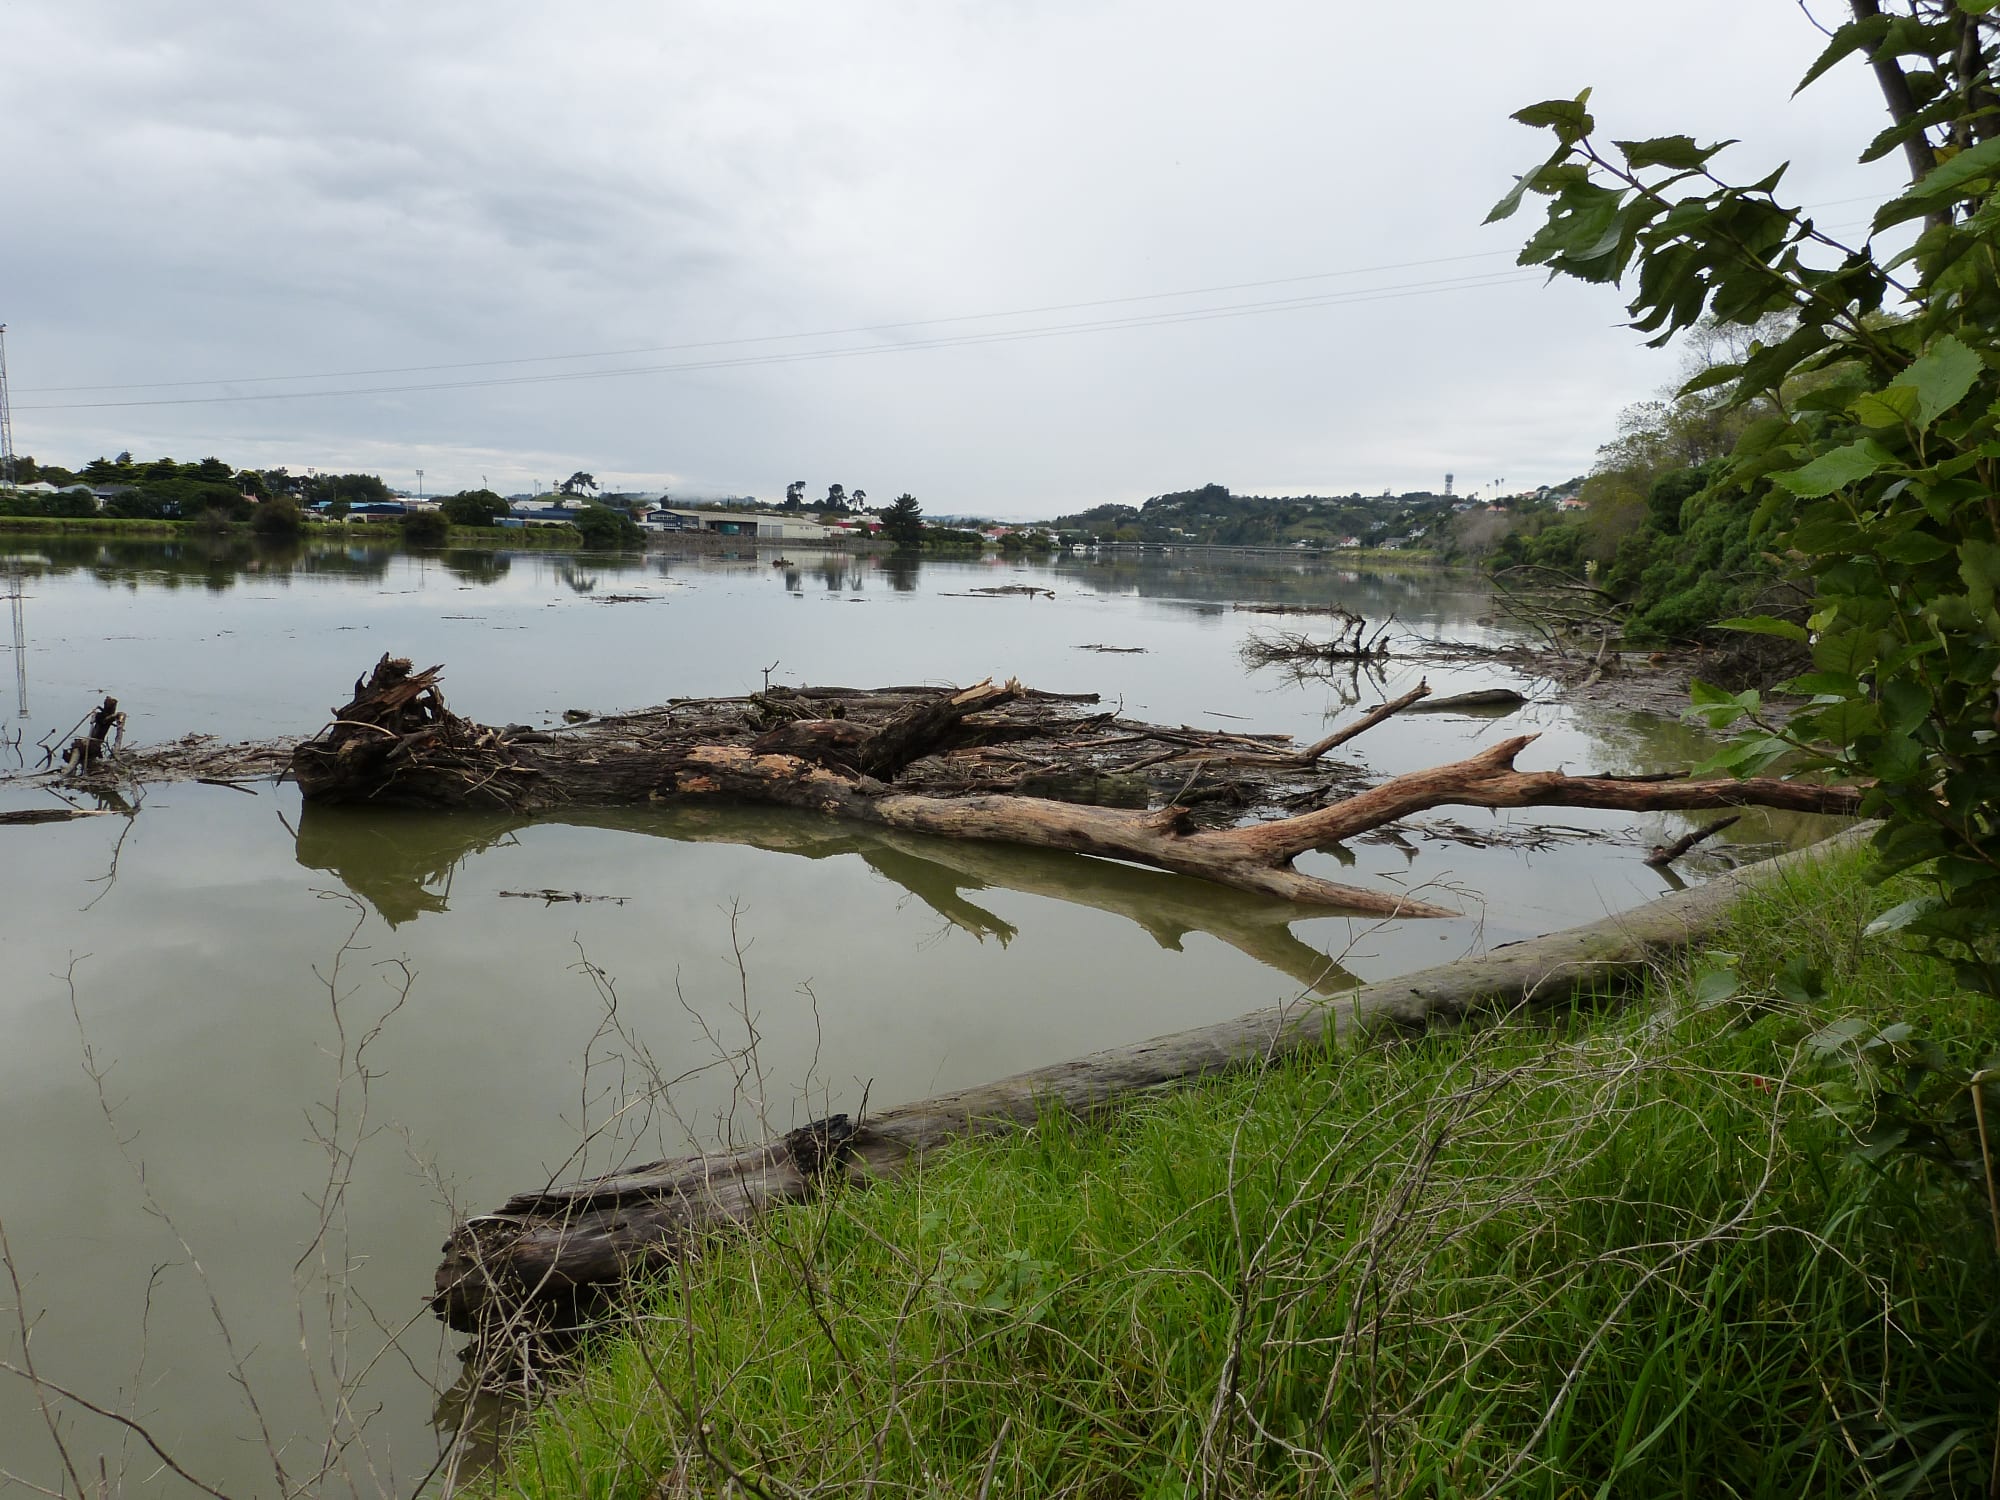 Views of the Whanganui River from the Putiki bank where the kura is located.